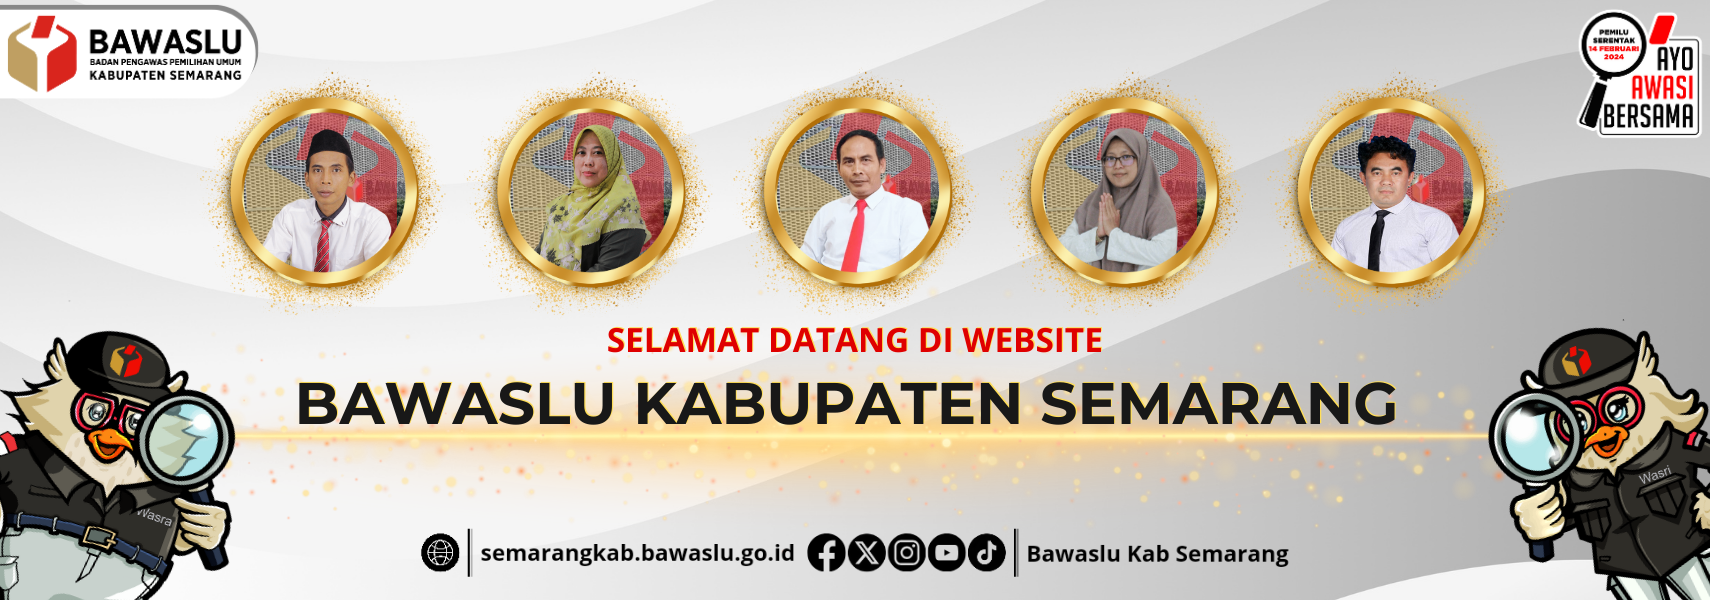 Selamat Datang di Website Bawaslu Kabupaten Semarang